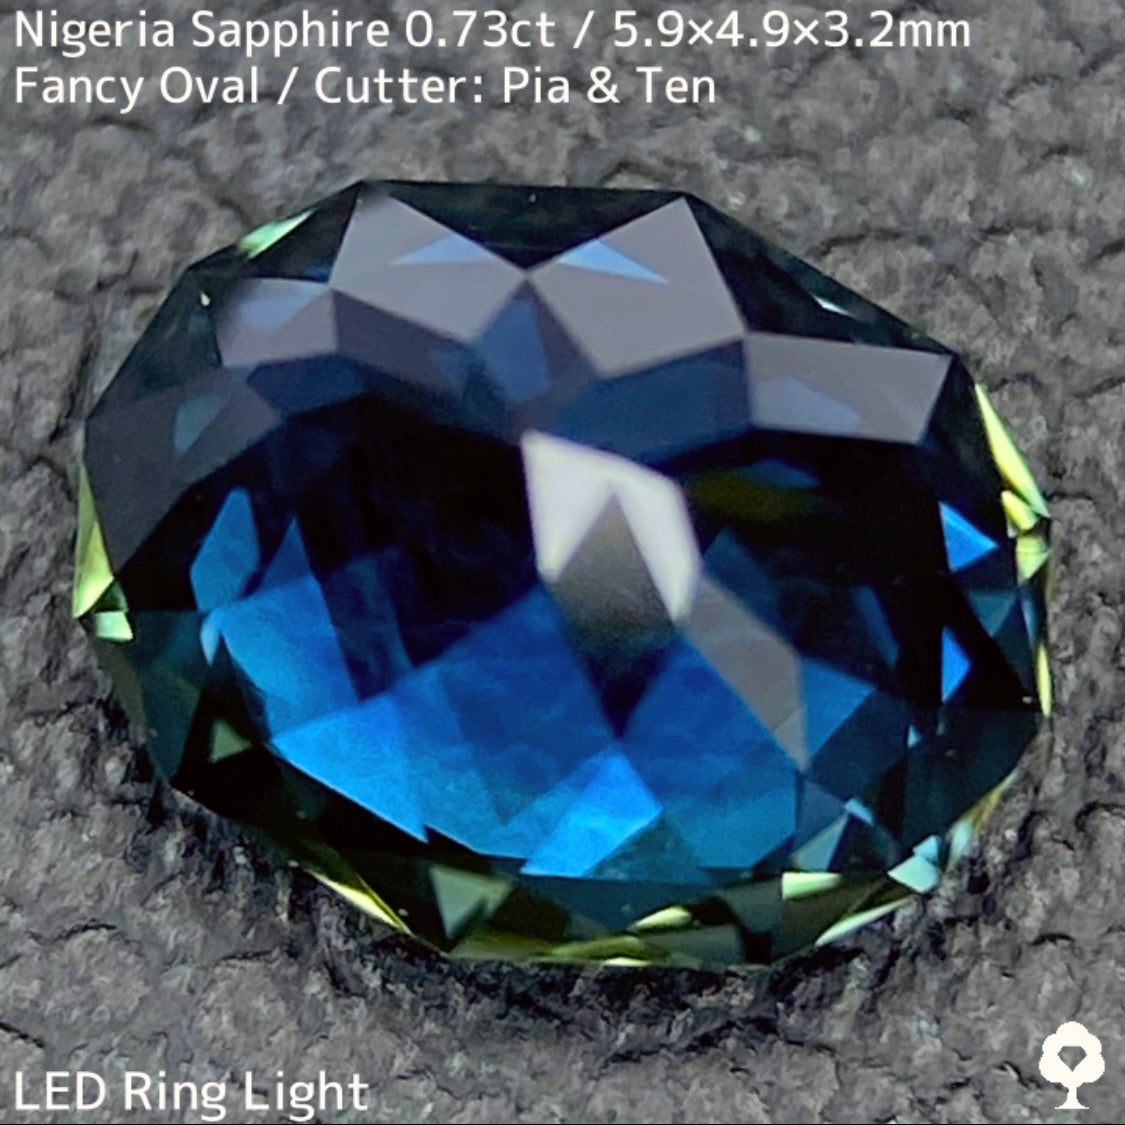 ナイジェリア産サファイア0.73ct★コーンフラワーブルーとグリーンが混ざり合う美色美結晶のティールインディゴ